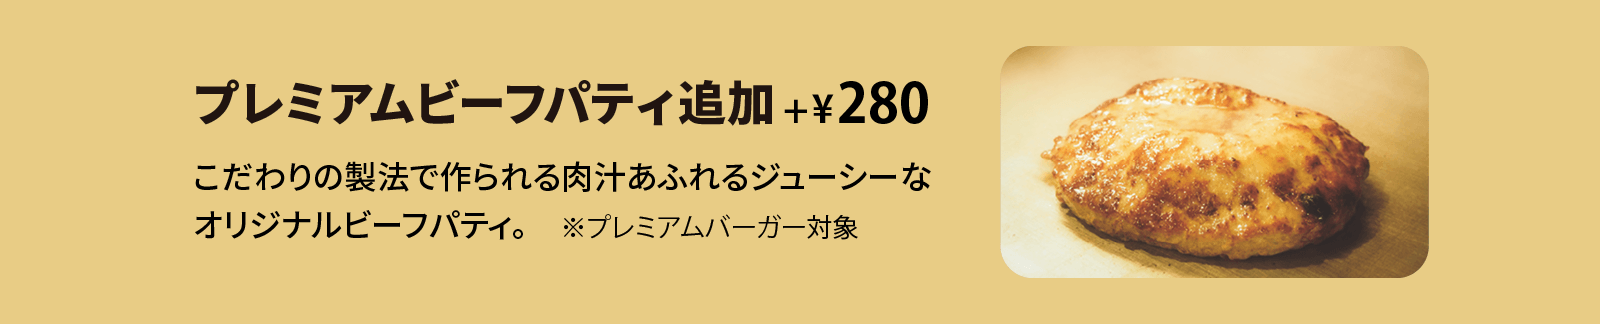 クラシックパティ追加 +¥260 こだわりの製法で作られる肉汁あふれるジューシーなオリジナルビーフパティ。※プレミアムバーガー対象